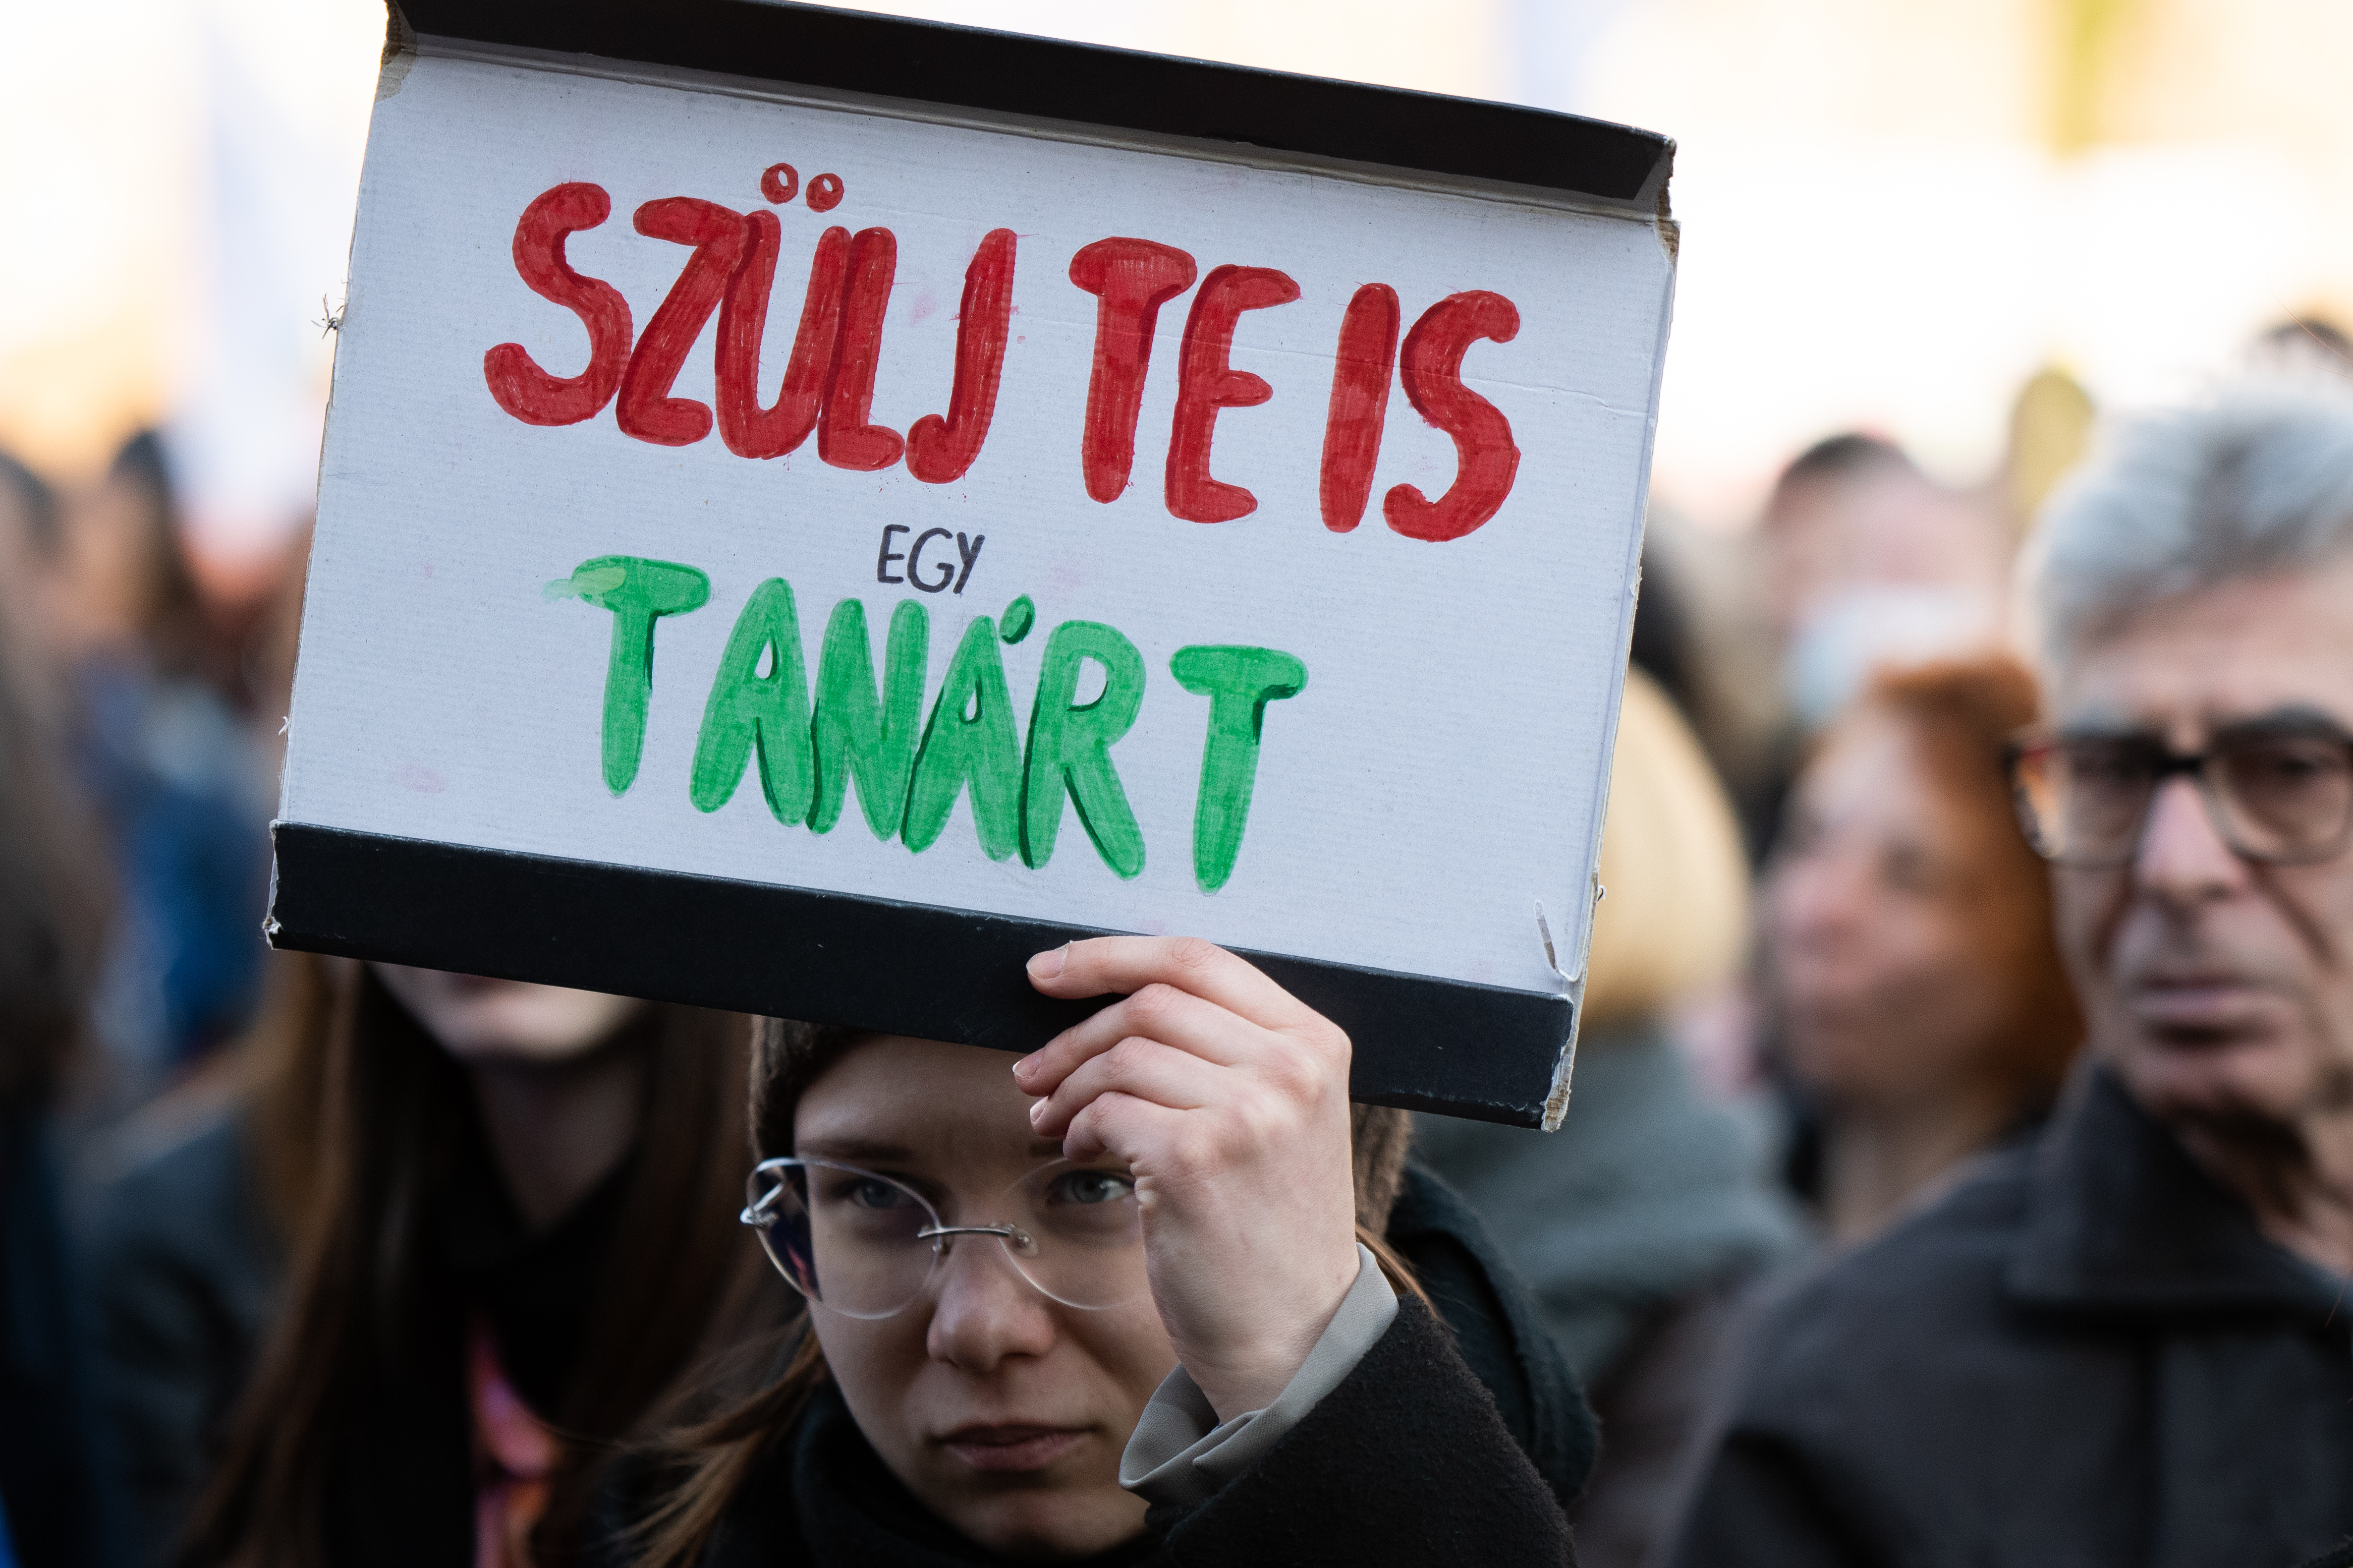 16 ezer tanár hiányzik a magyar közoktatásból